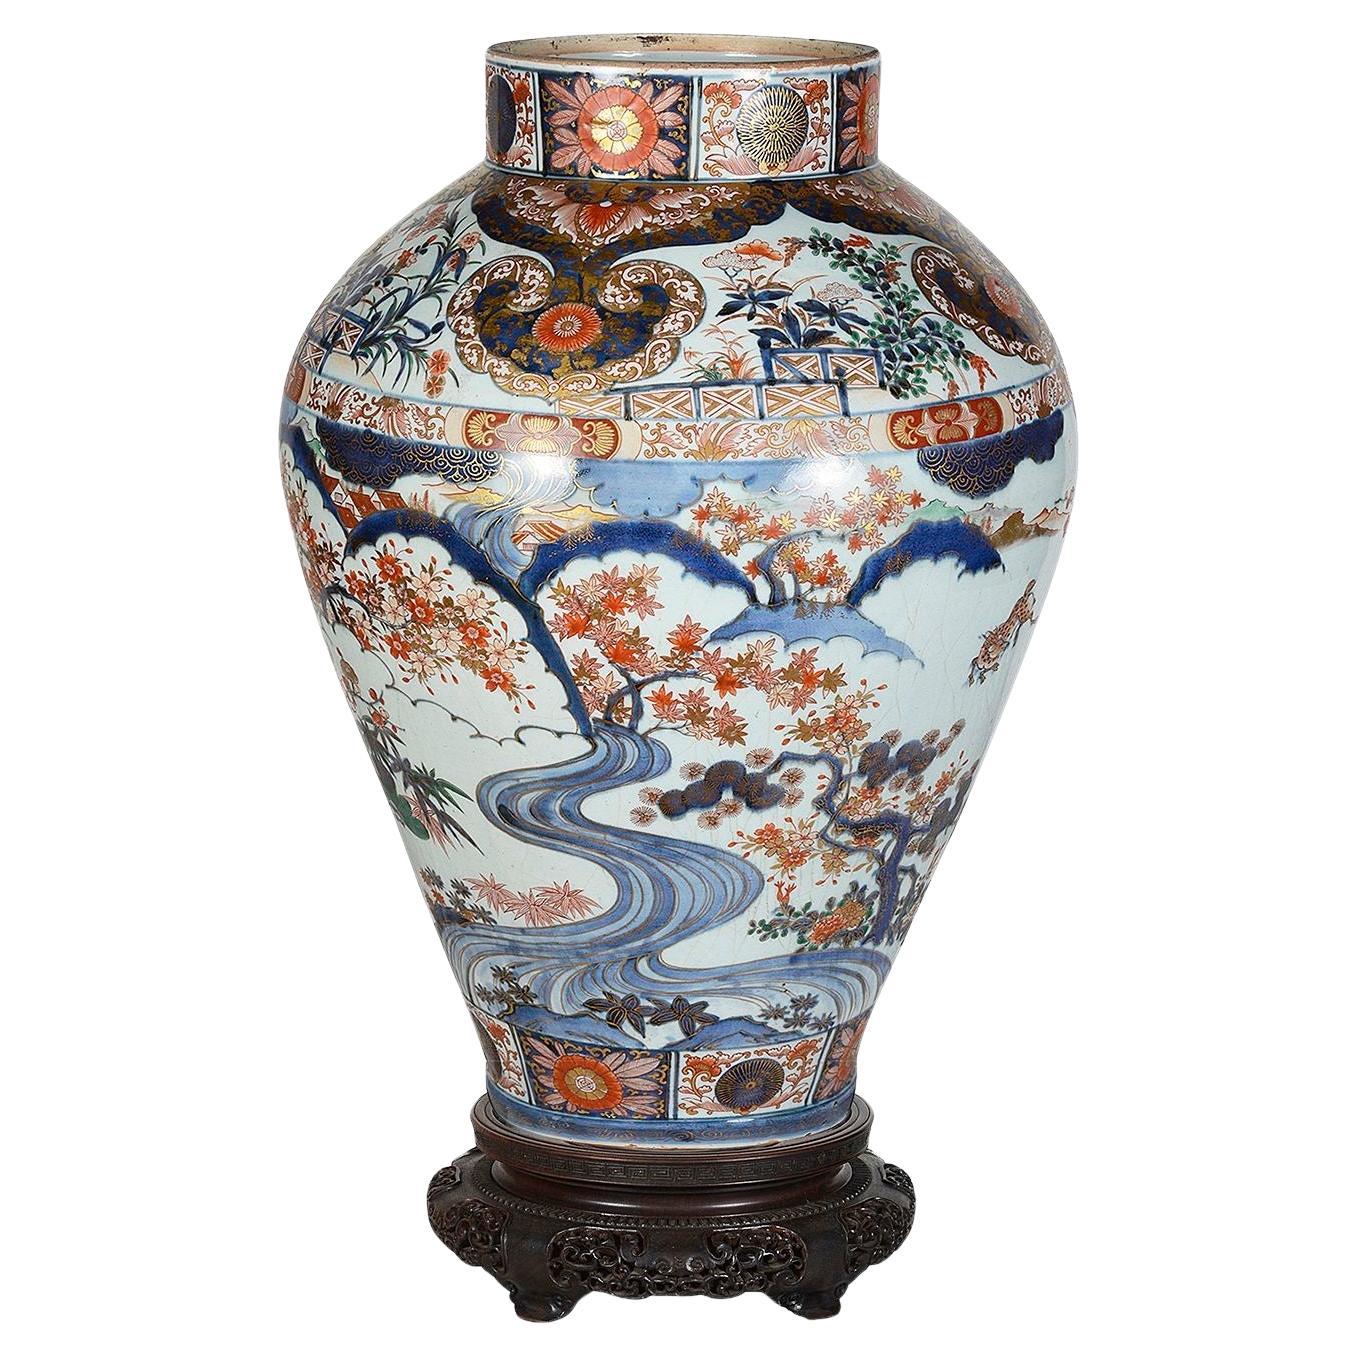 Un spectaculaire vase japonais Arita Imari du 18e siècle sur pied. Il possède de magnifiques couleurs vives. Elle présente un magnifique motif de volutes et une décoration feuillue. Scènes de cerfs se nourrissant sous des arbres en fleurs, avec des